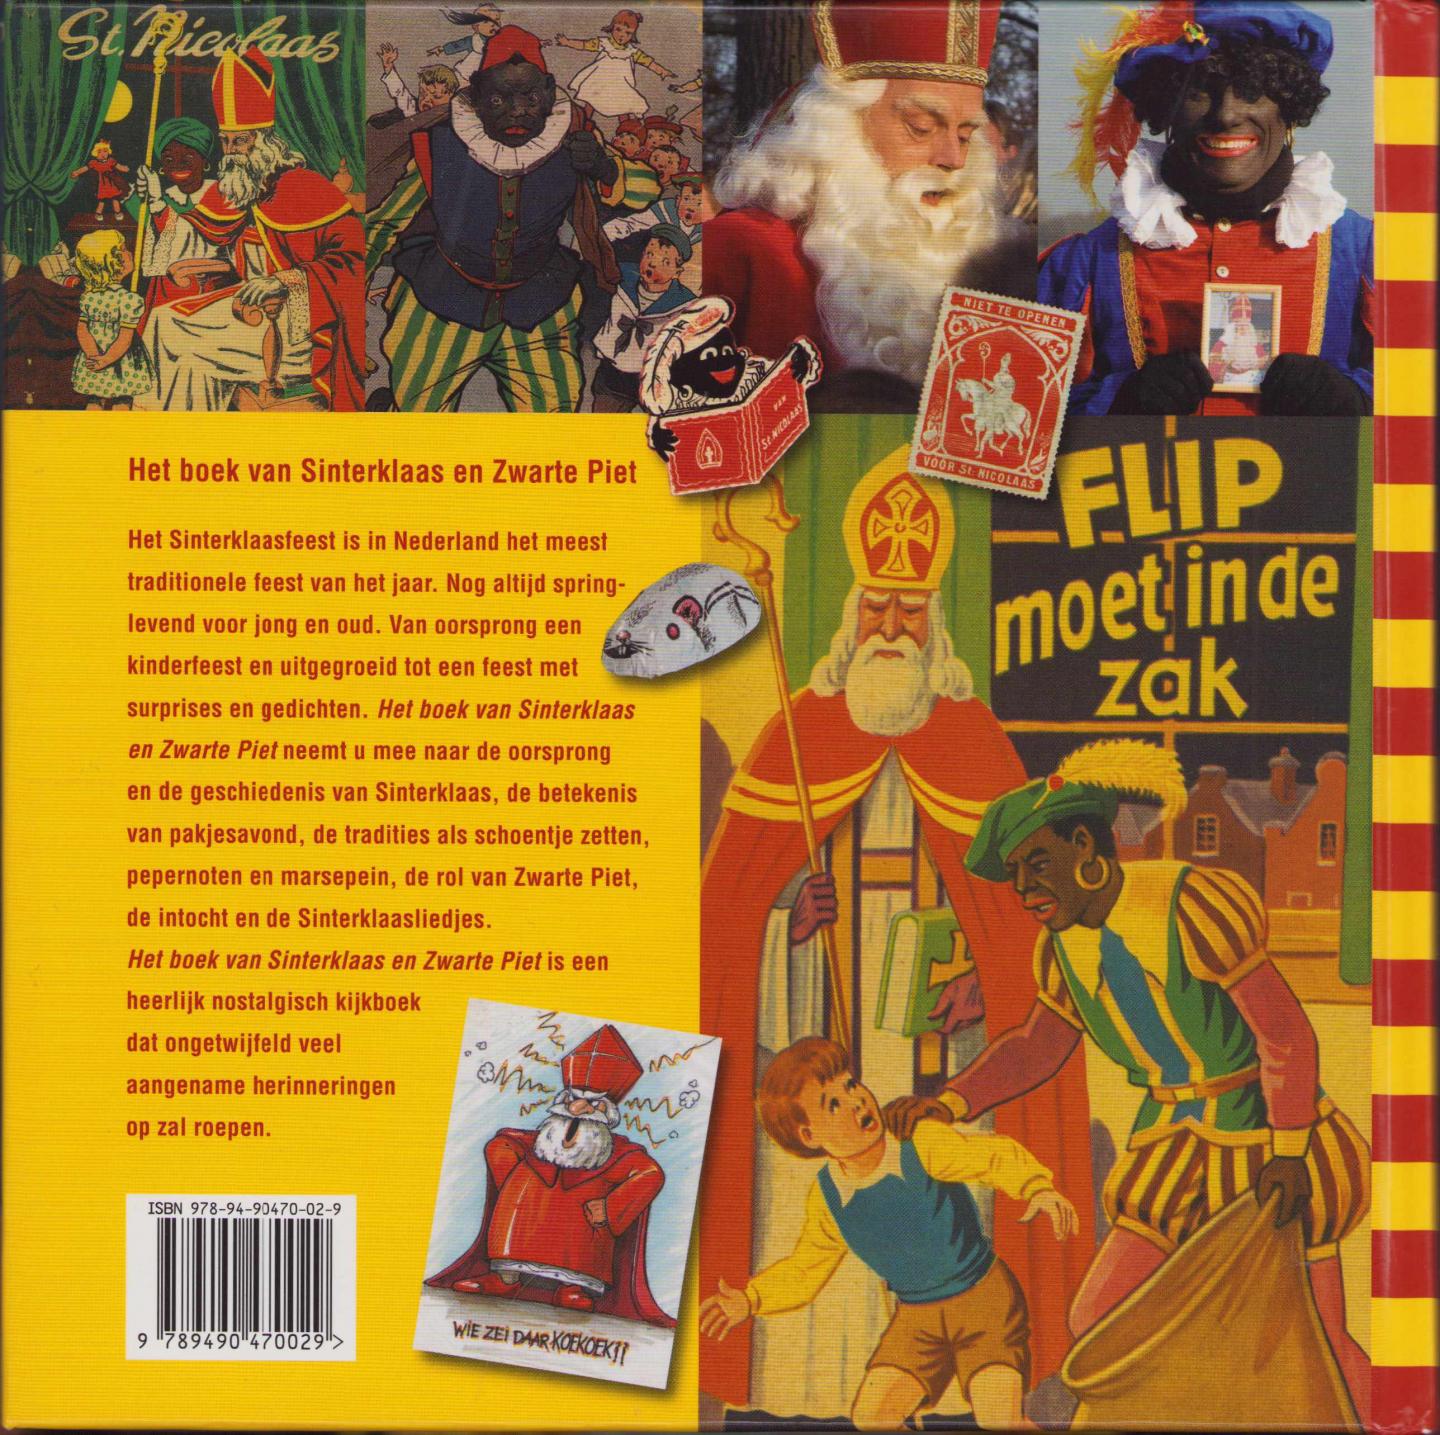 Gijs Dragt Aranka Wijnbeek - Het boek van Sinterklaas en Zwarte piet